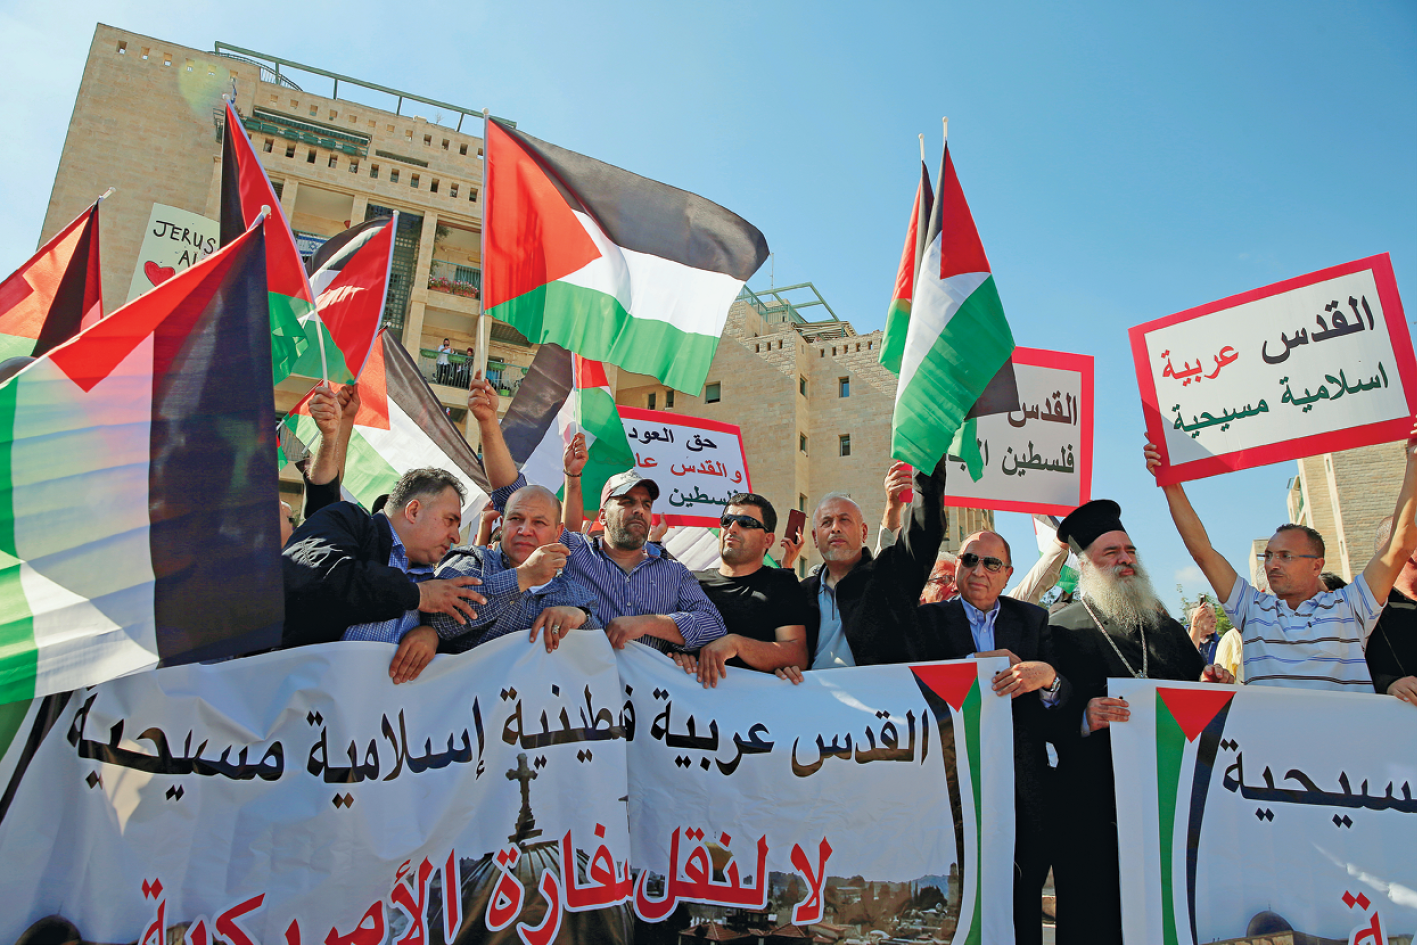 Fotografia. No primeiro plano, pessoas segurando uma grande faixa com escritos em árabe e, atrás delas, outras pessoas com bandeiras da Palestina e cartazes com escritos em árabe. Atrás, edifícios.